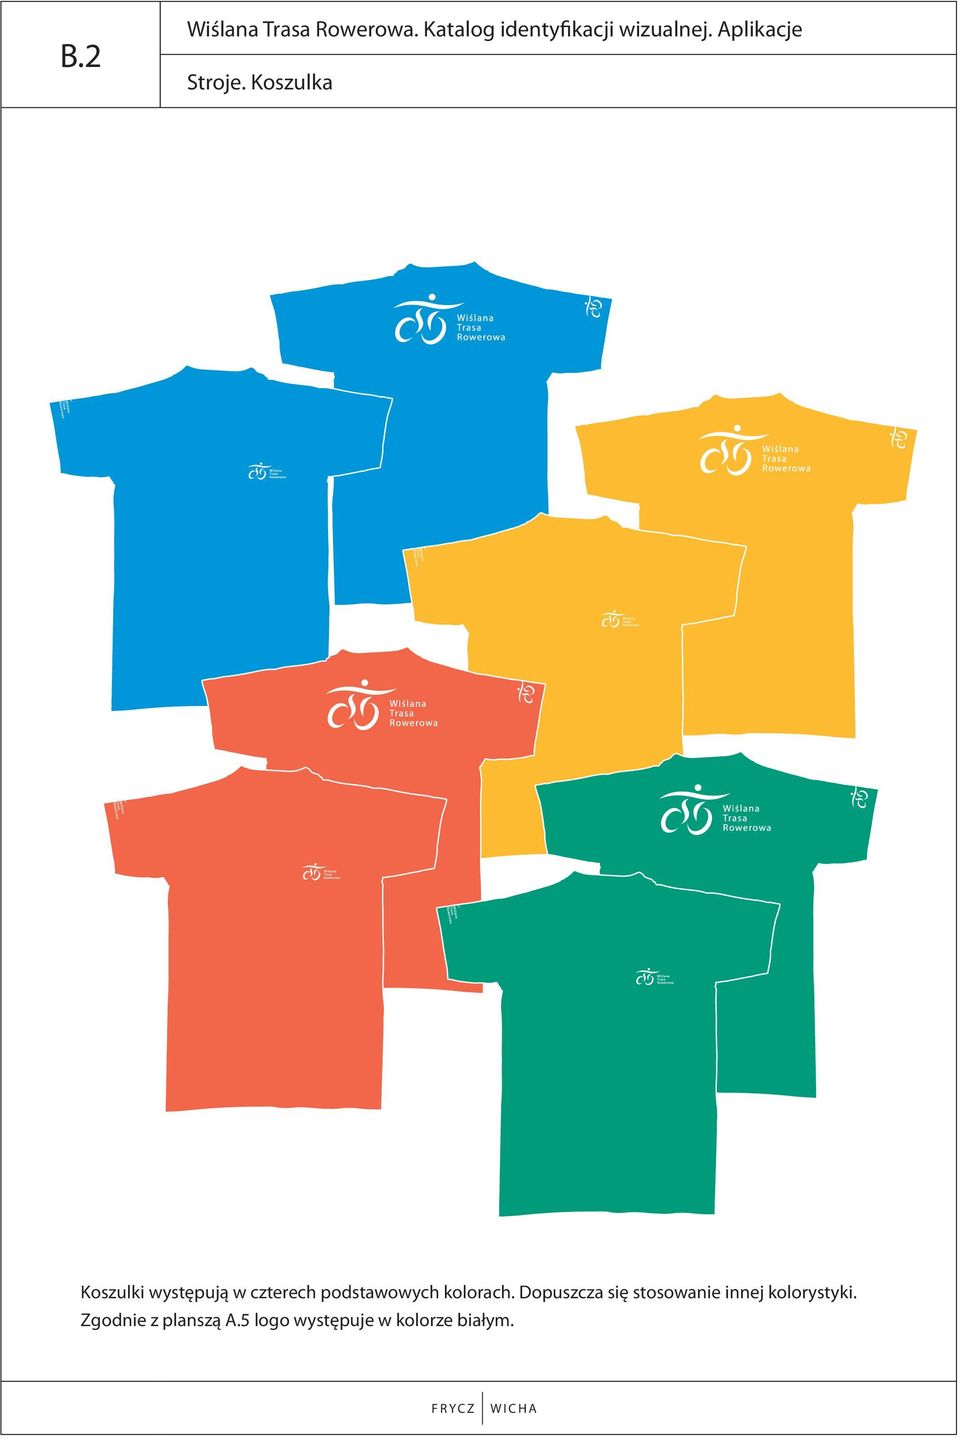 Koszulka Koszulki występują w czterech podstawowych